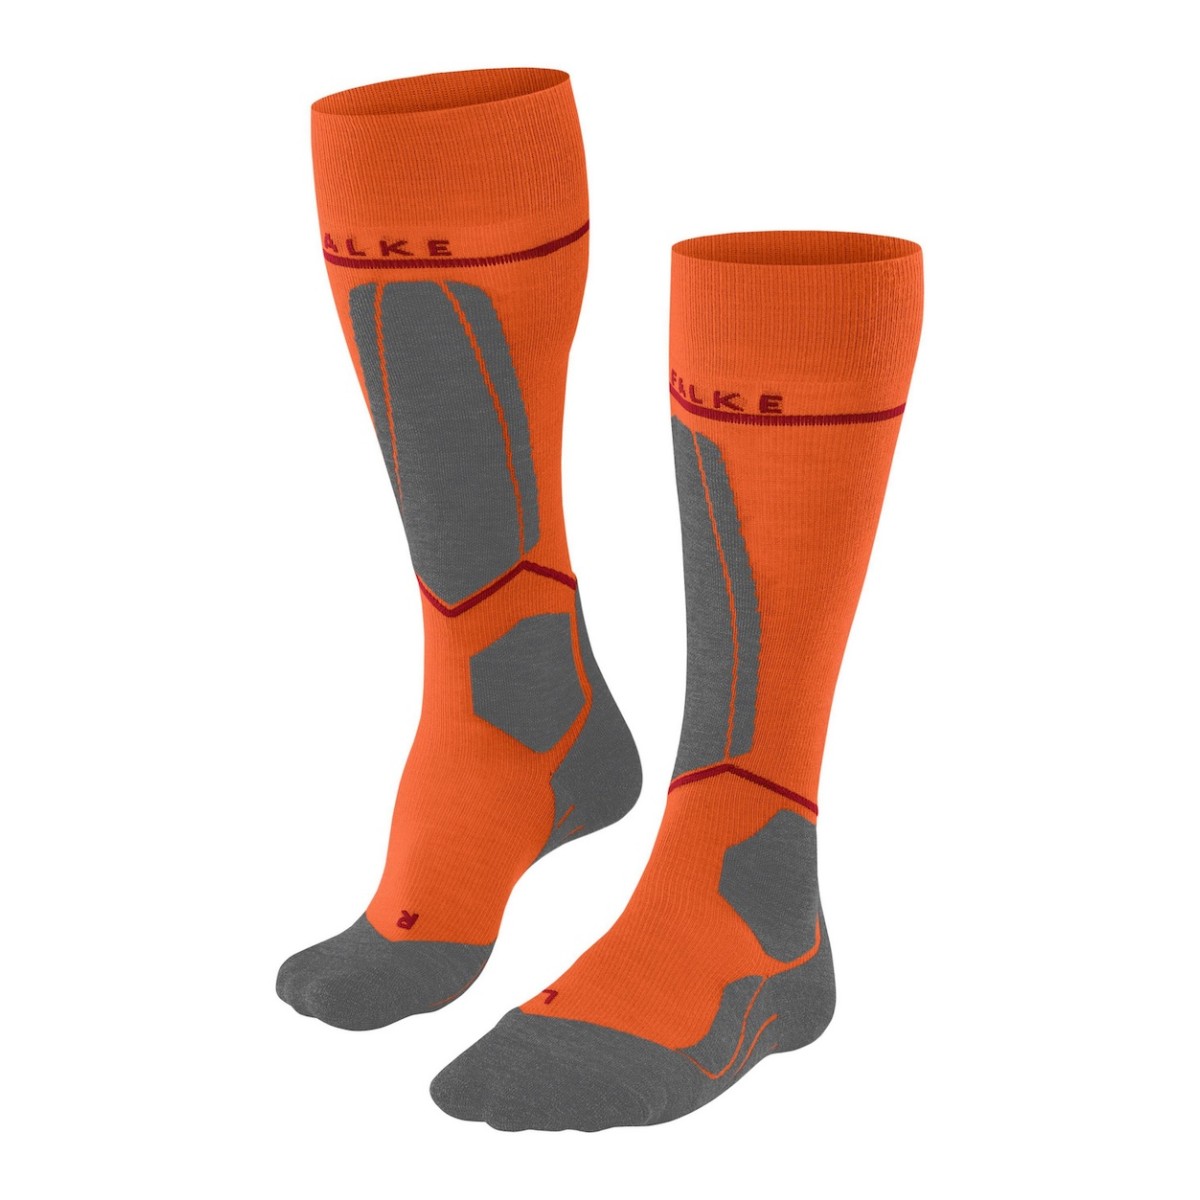 FALKE SK4 socks - orange/grey